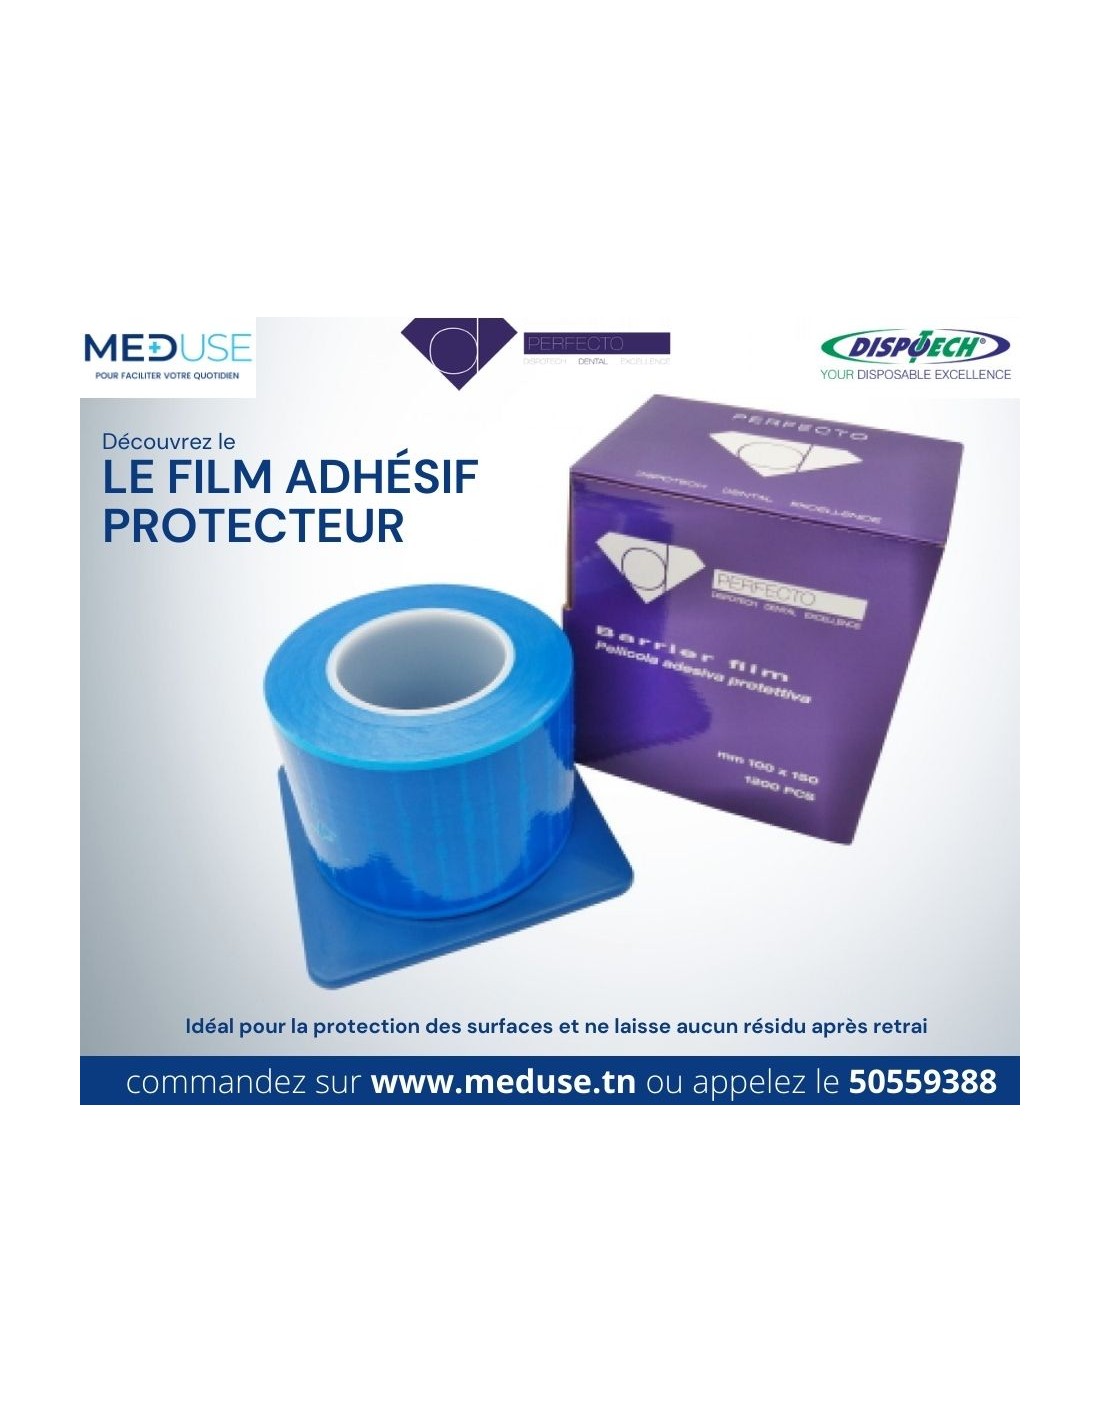 Film adhesif de protection equipements et surface (1200 pcs)